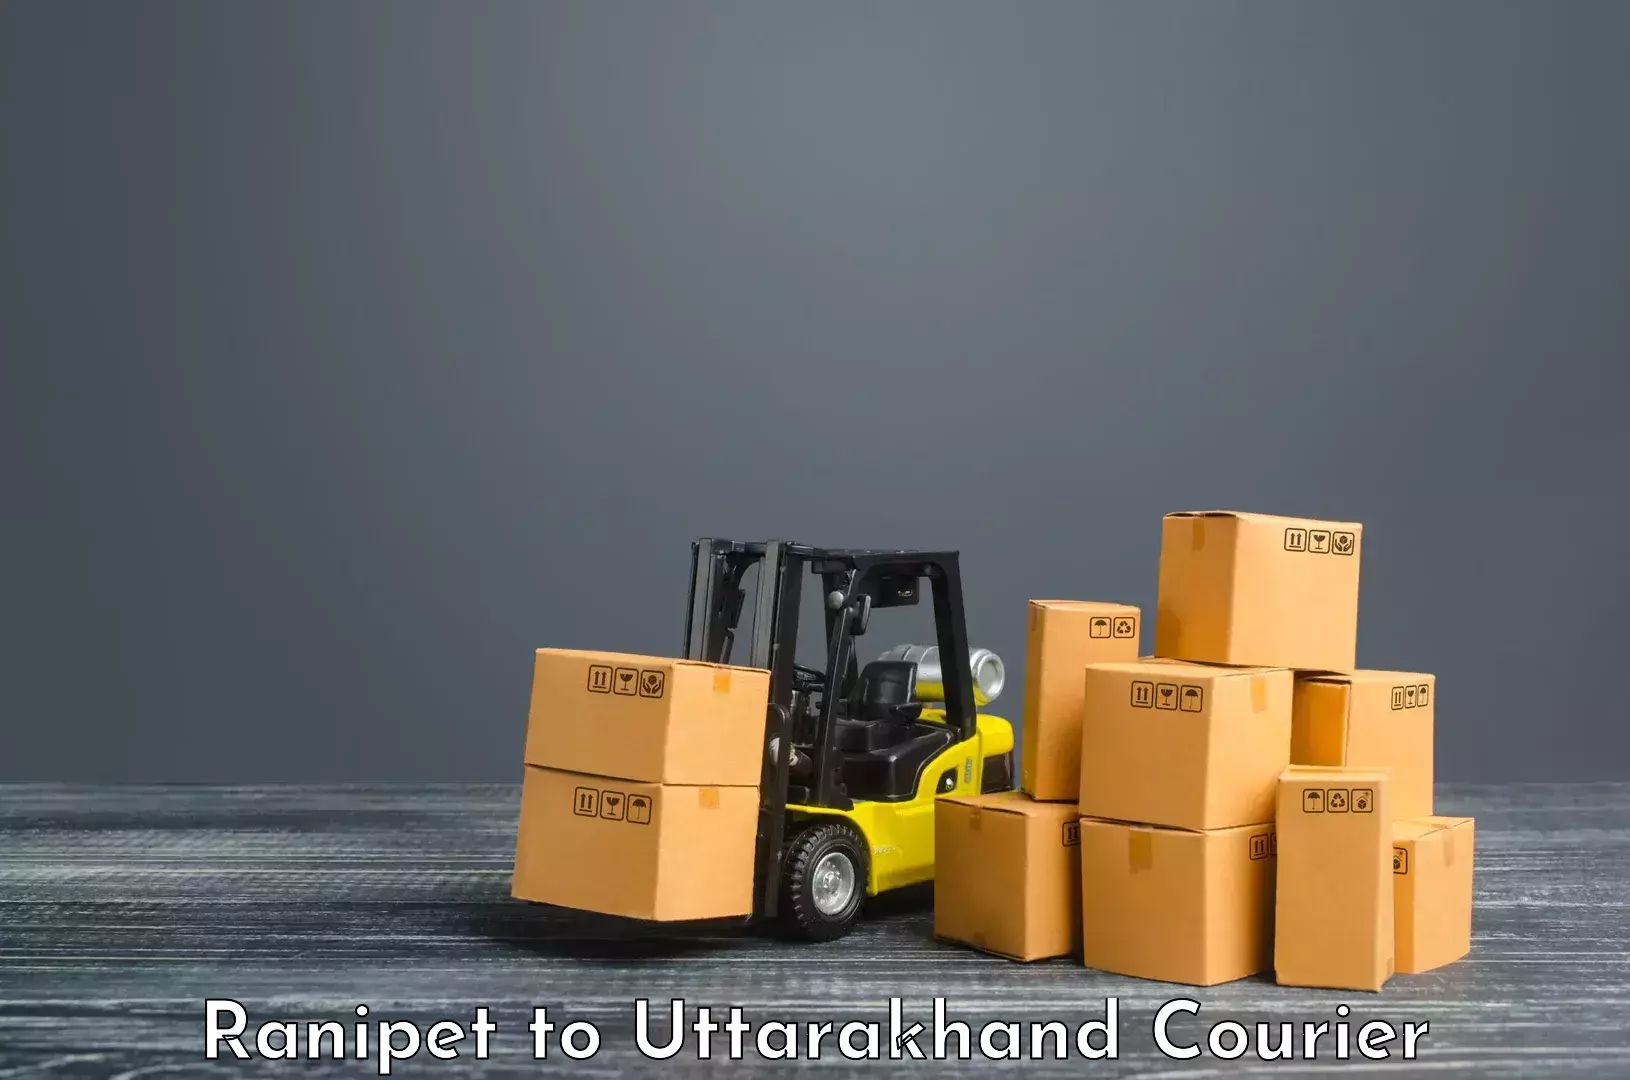 Quality courier partnerships Ranipet to Uttarkashi